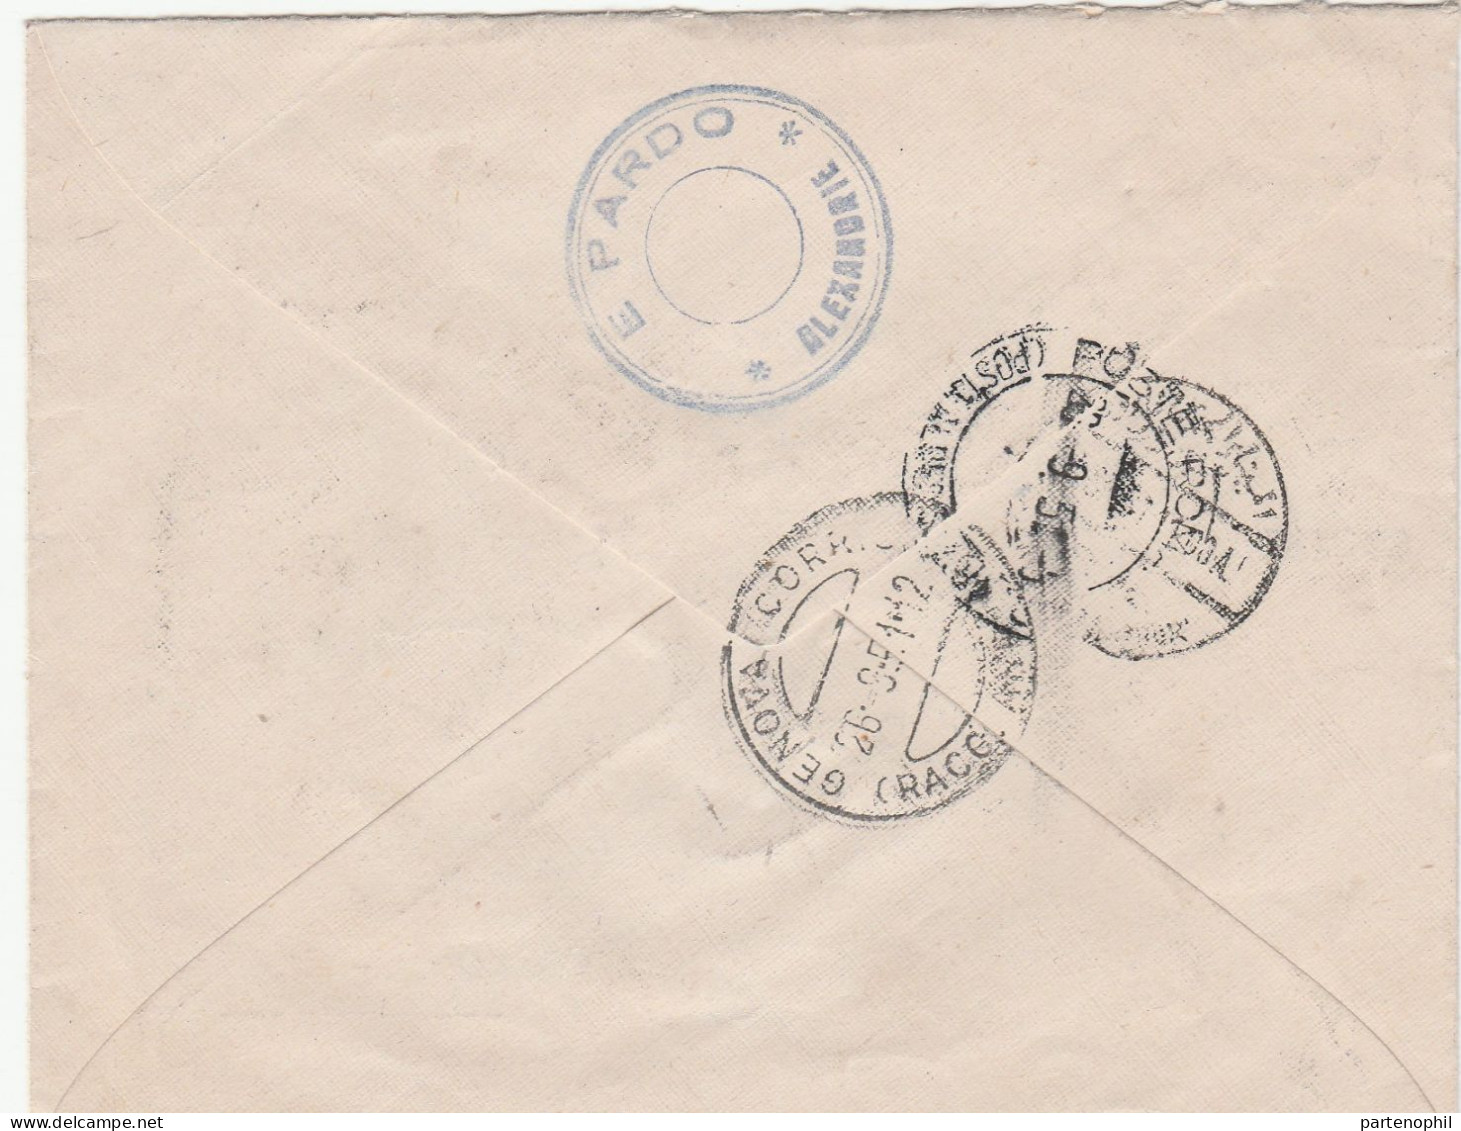 Egypt Egitto Aegypten 1951  Postgeschichte - Storia Postale - Histoire Postale - Covers & Documents